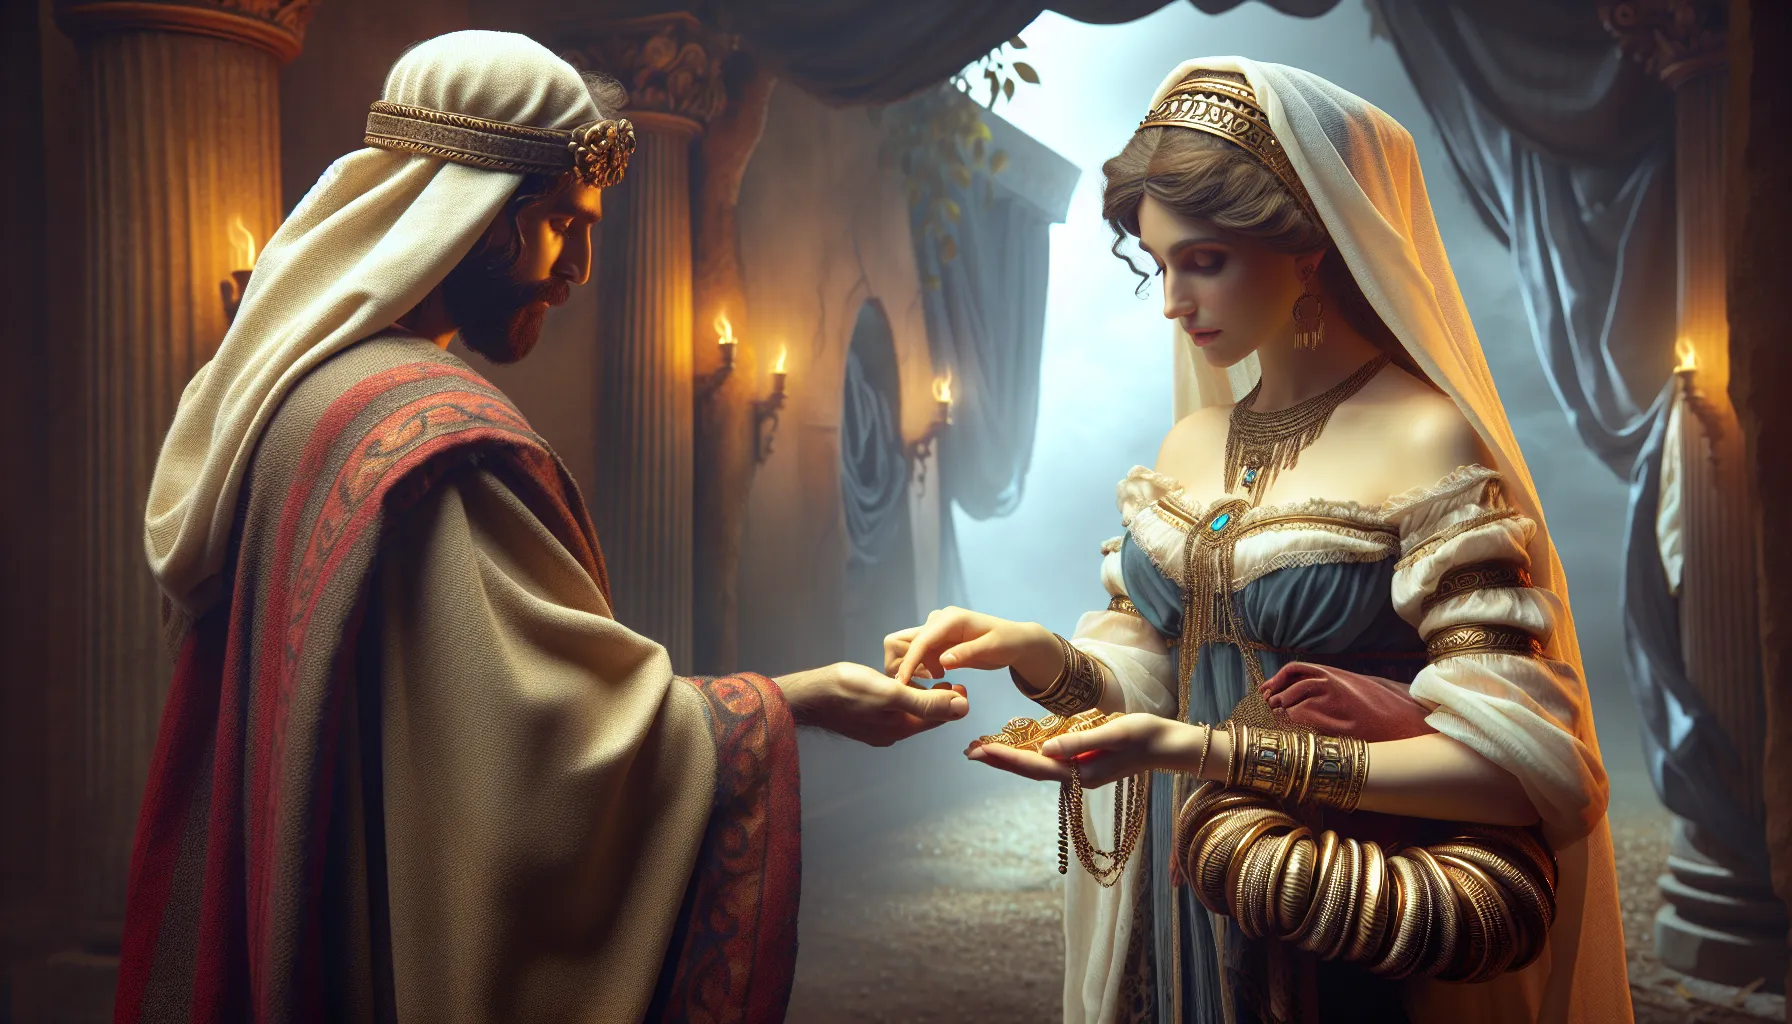 La imagen muestra una ilustración de una mujer antigua entregando una dote a un hombre